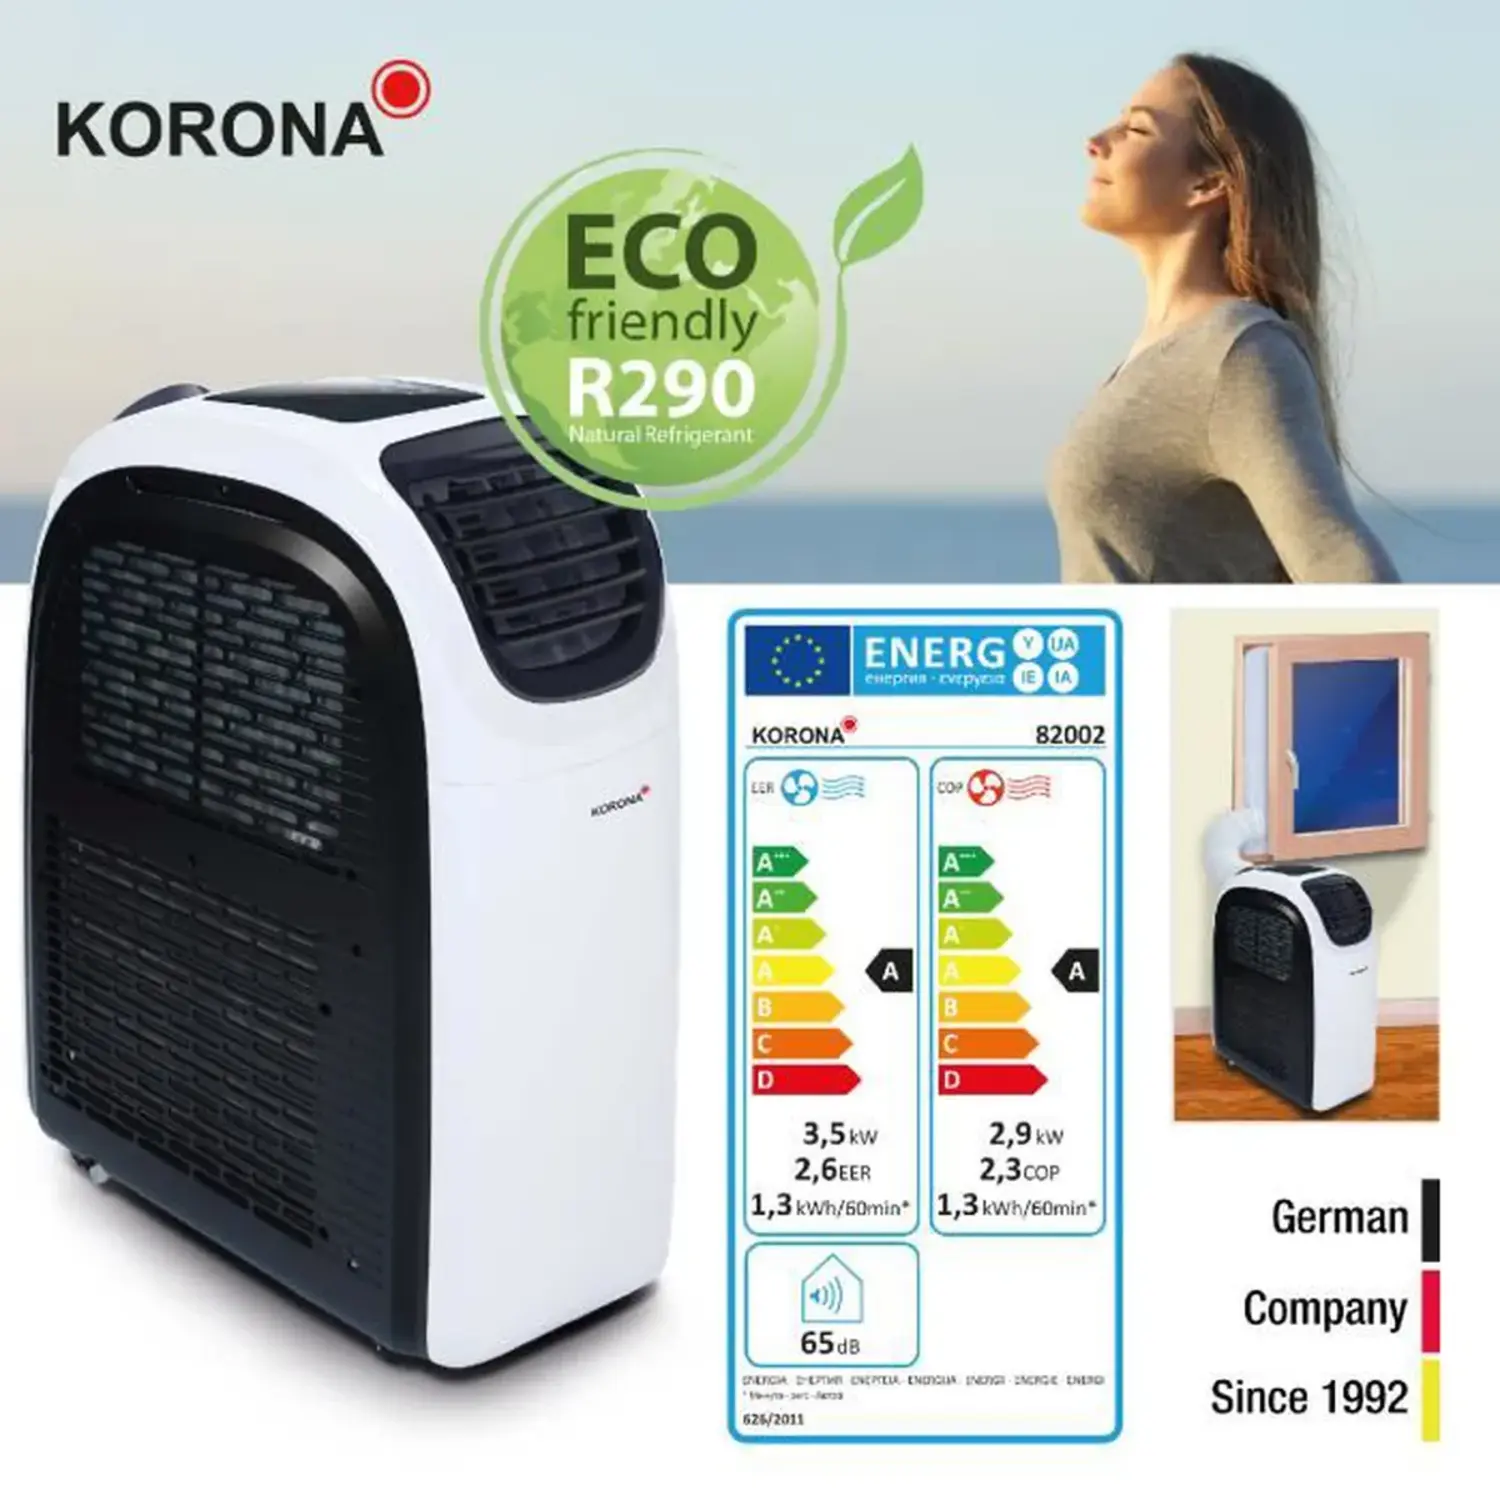 Soldes : -365 € de réduction sur ce climatiseur mobile Korona ultra performant